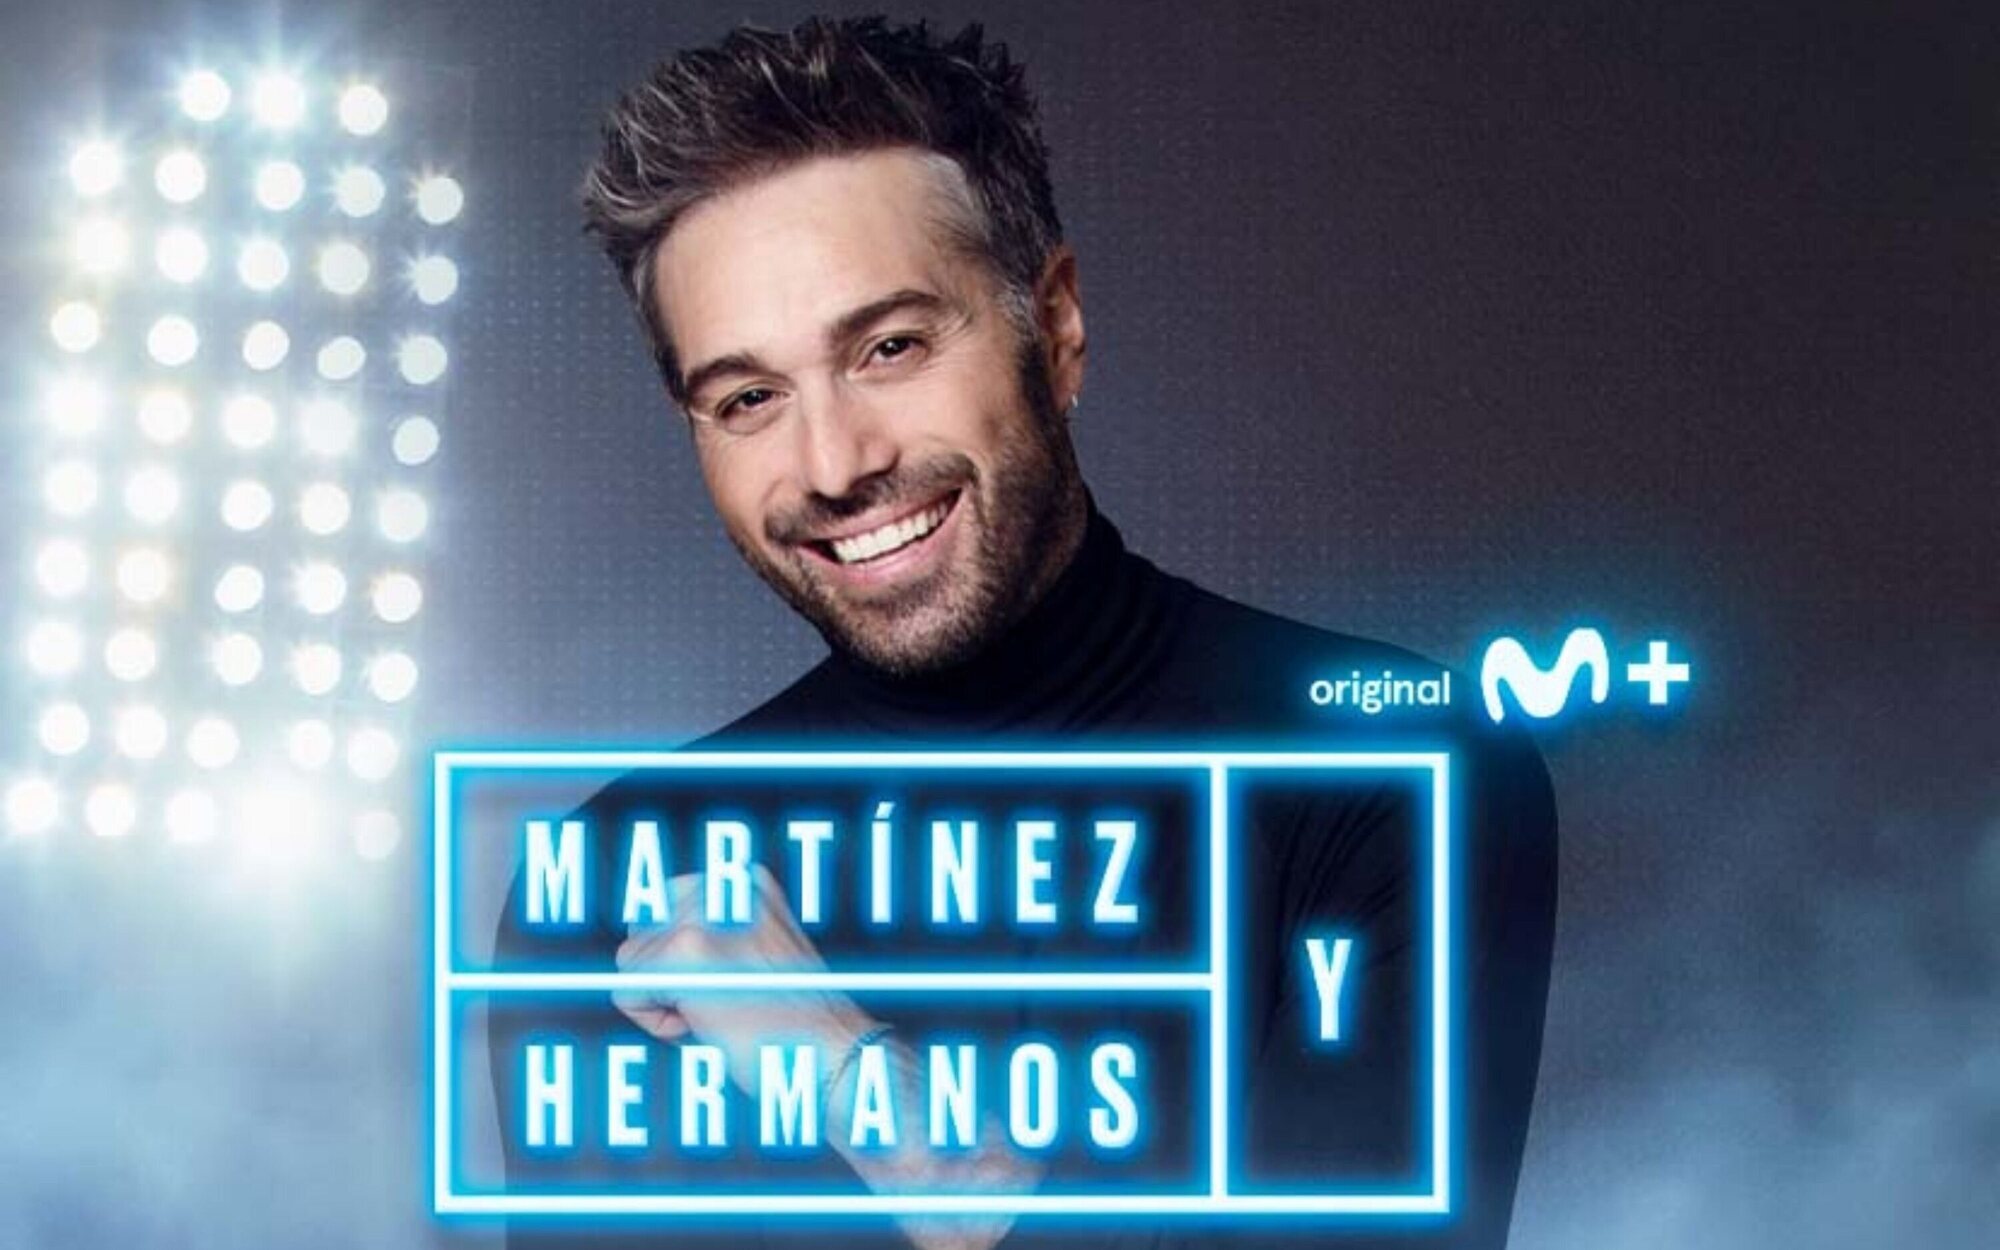 'Martínez y hermanos': Así se llama el programa de Dani Martínez en Movistar+